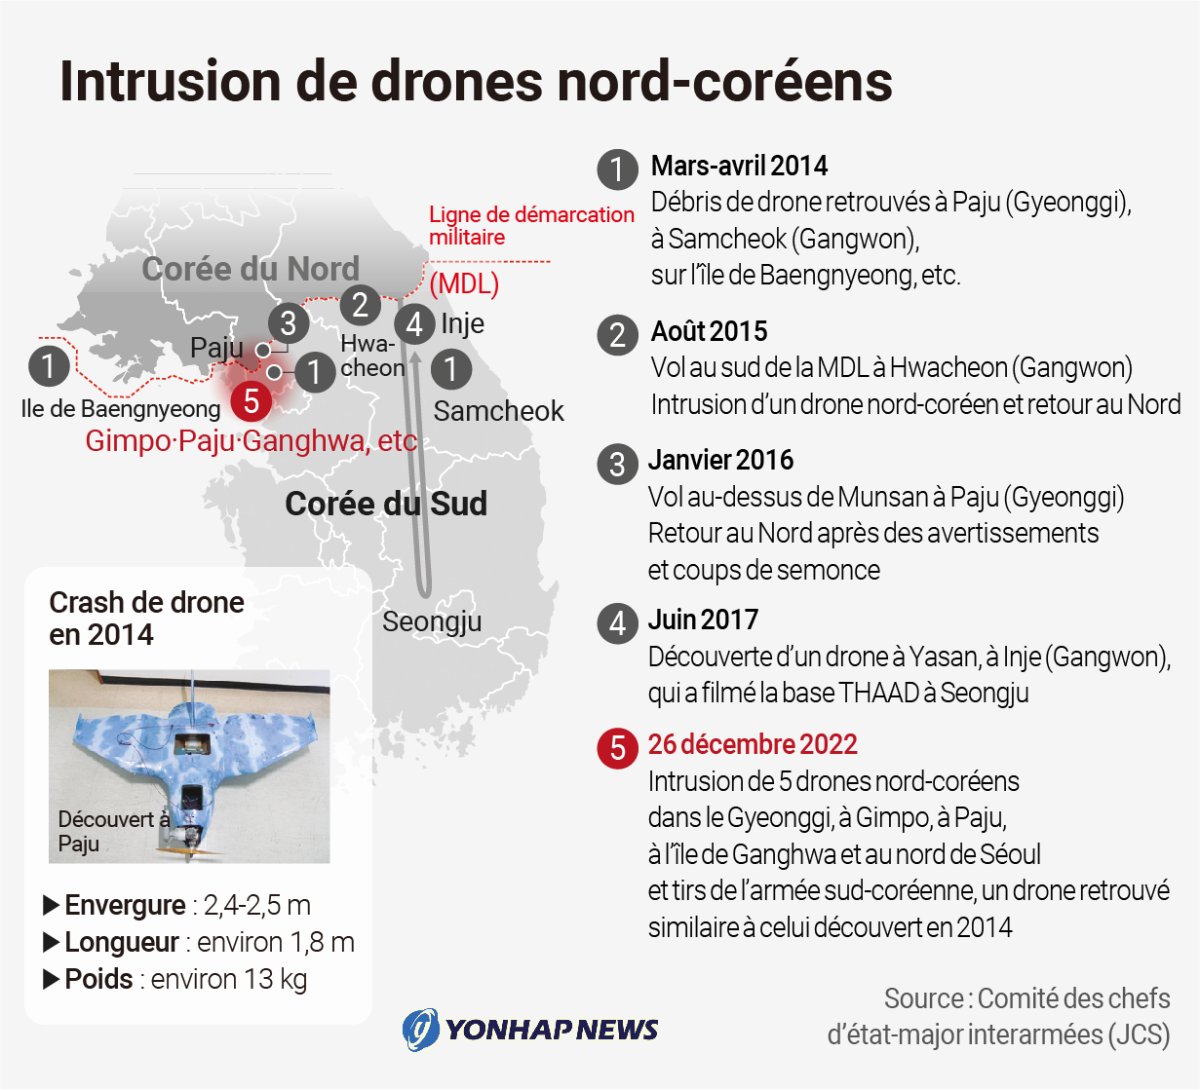 Intrusion de drones nord-coréens